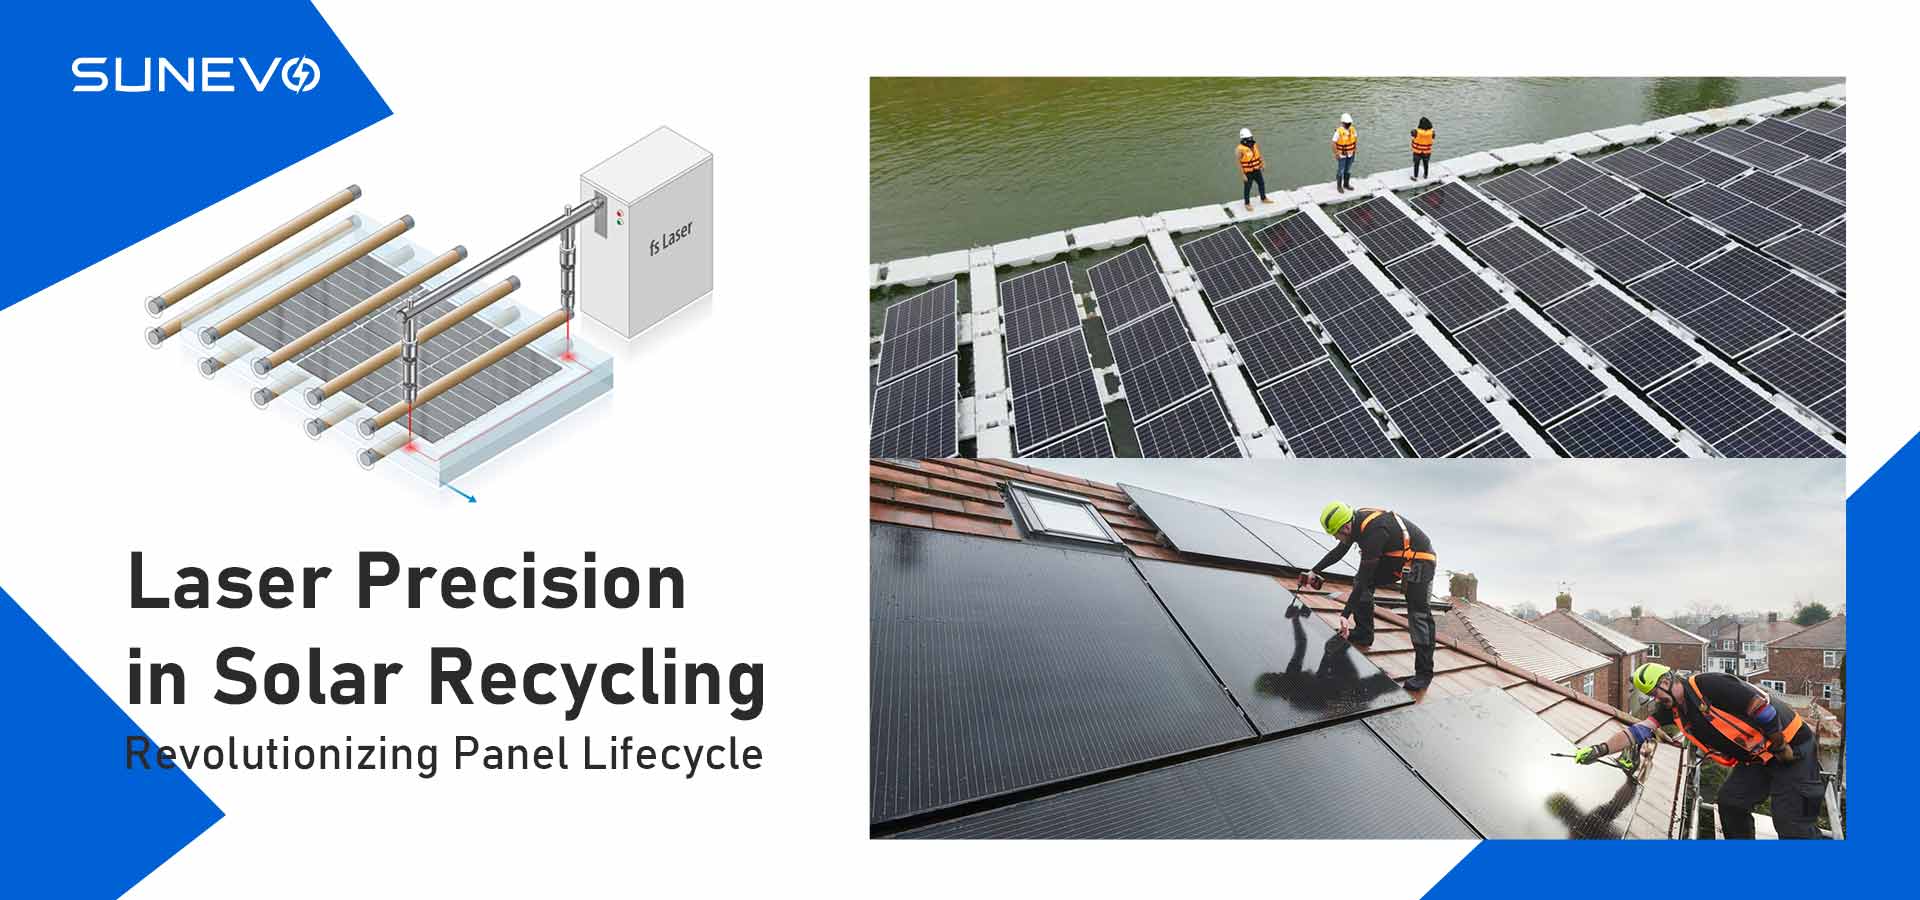 Précision laser dans le recyclage solaire : révolutionner le cycle de vie des panneaux